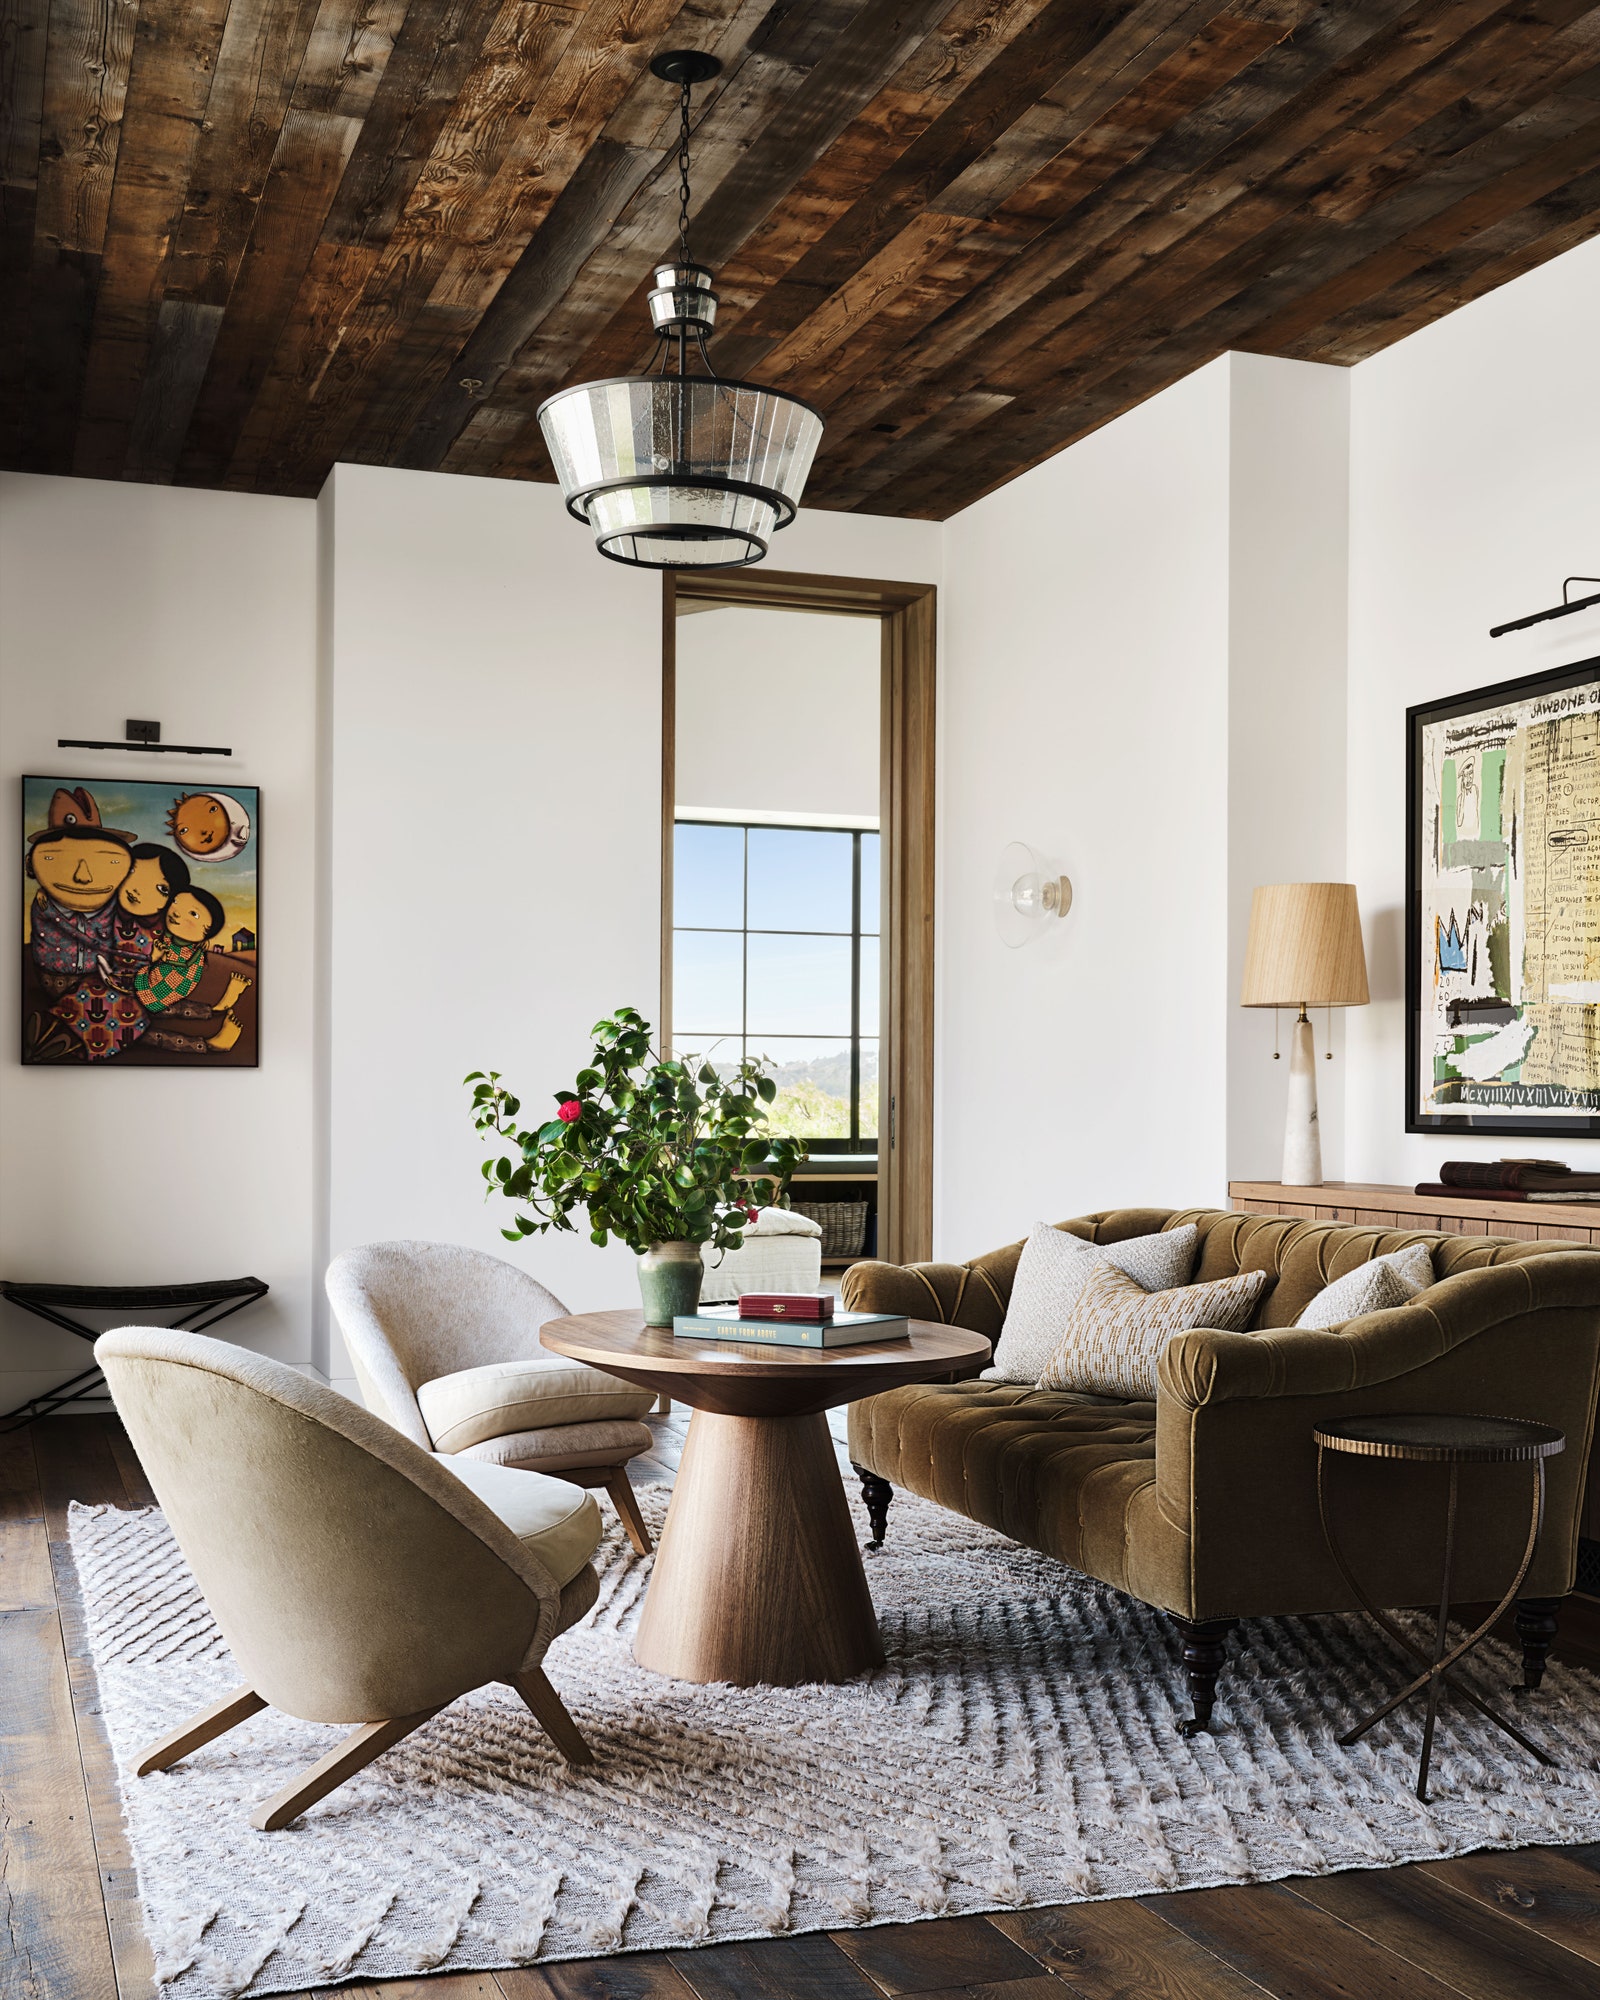 Lenyűgöző farmház Los Angelesben: nézd meg Mila Kunis és Ashton Kutcher gyönyörű kaliforniai otthonát. Hírességek otthona.